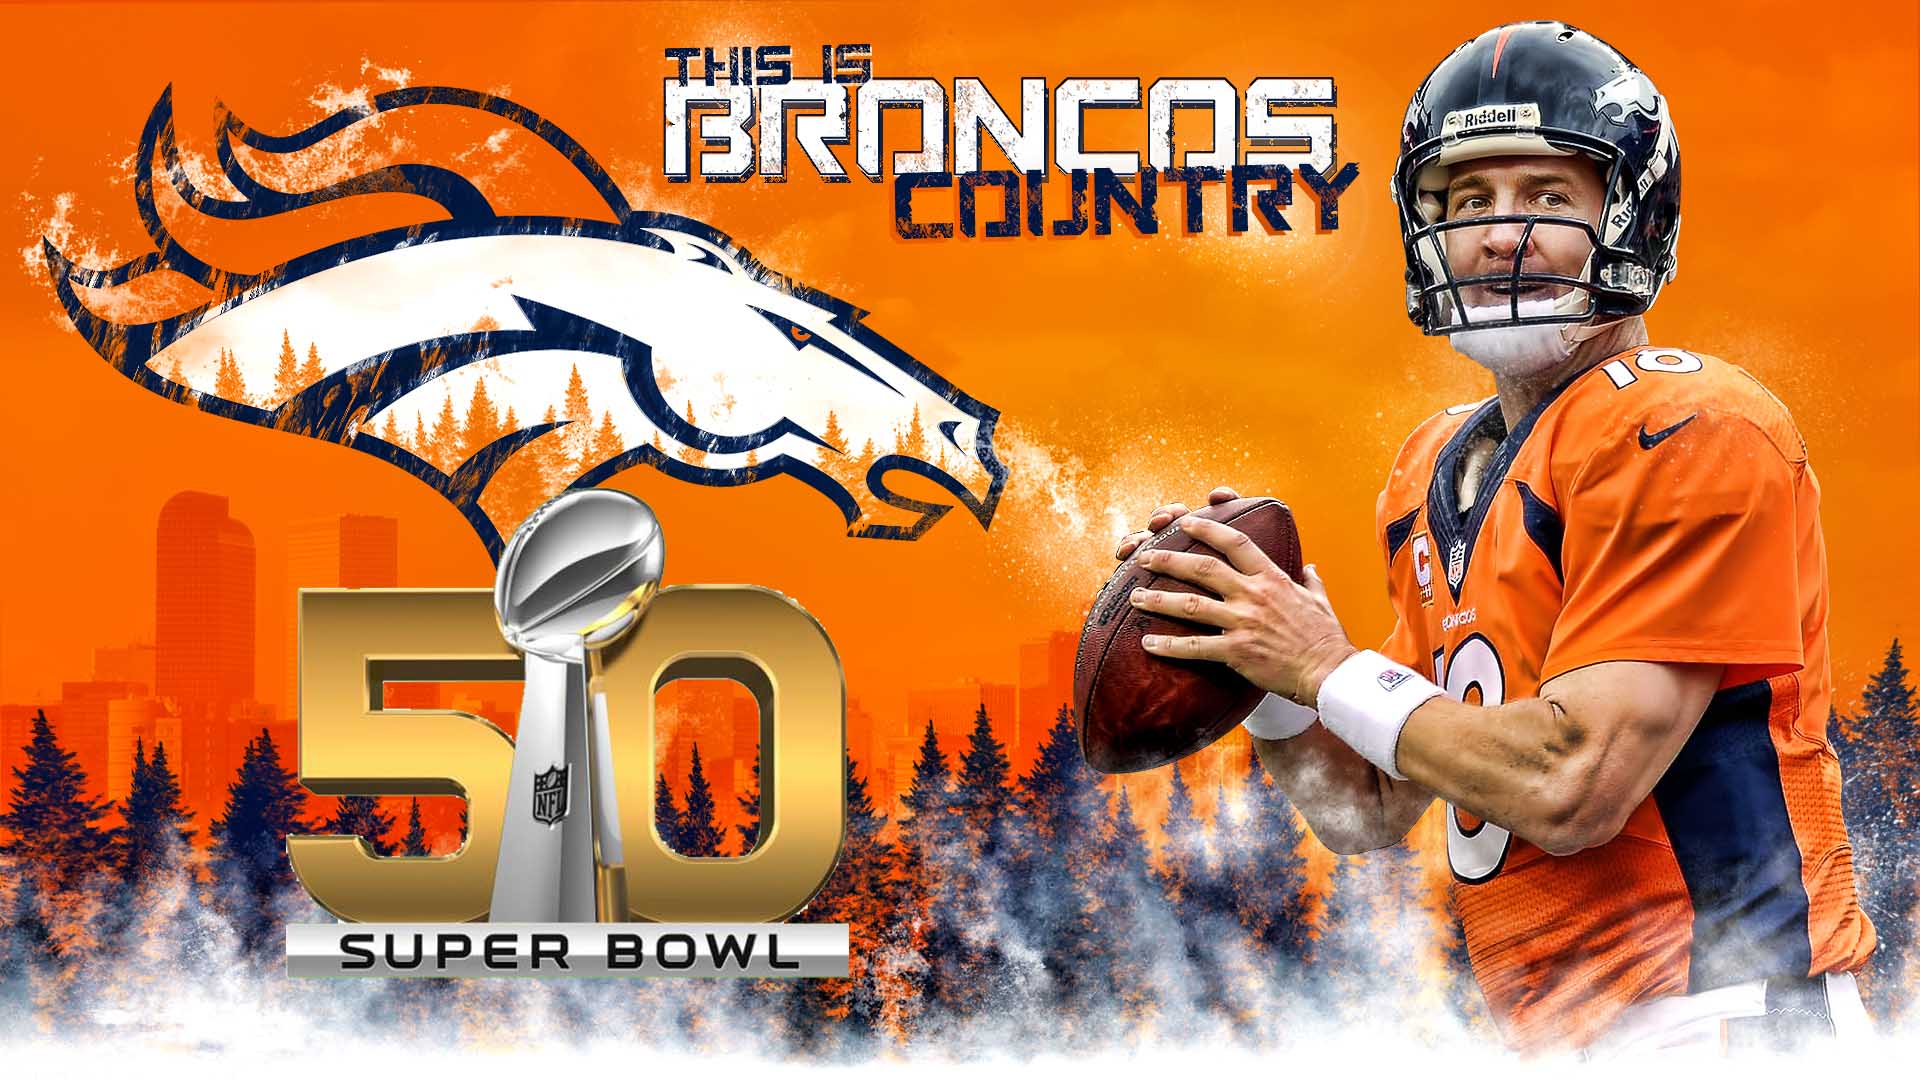 Go Broncos!!